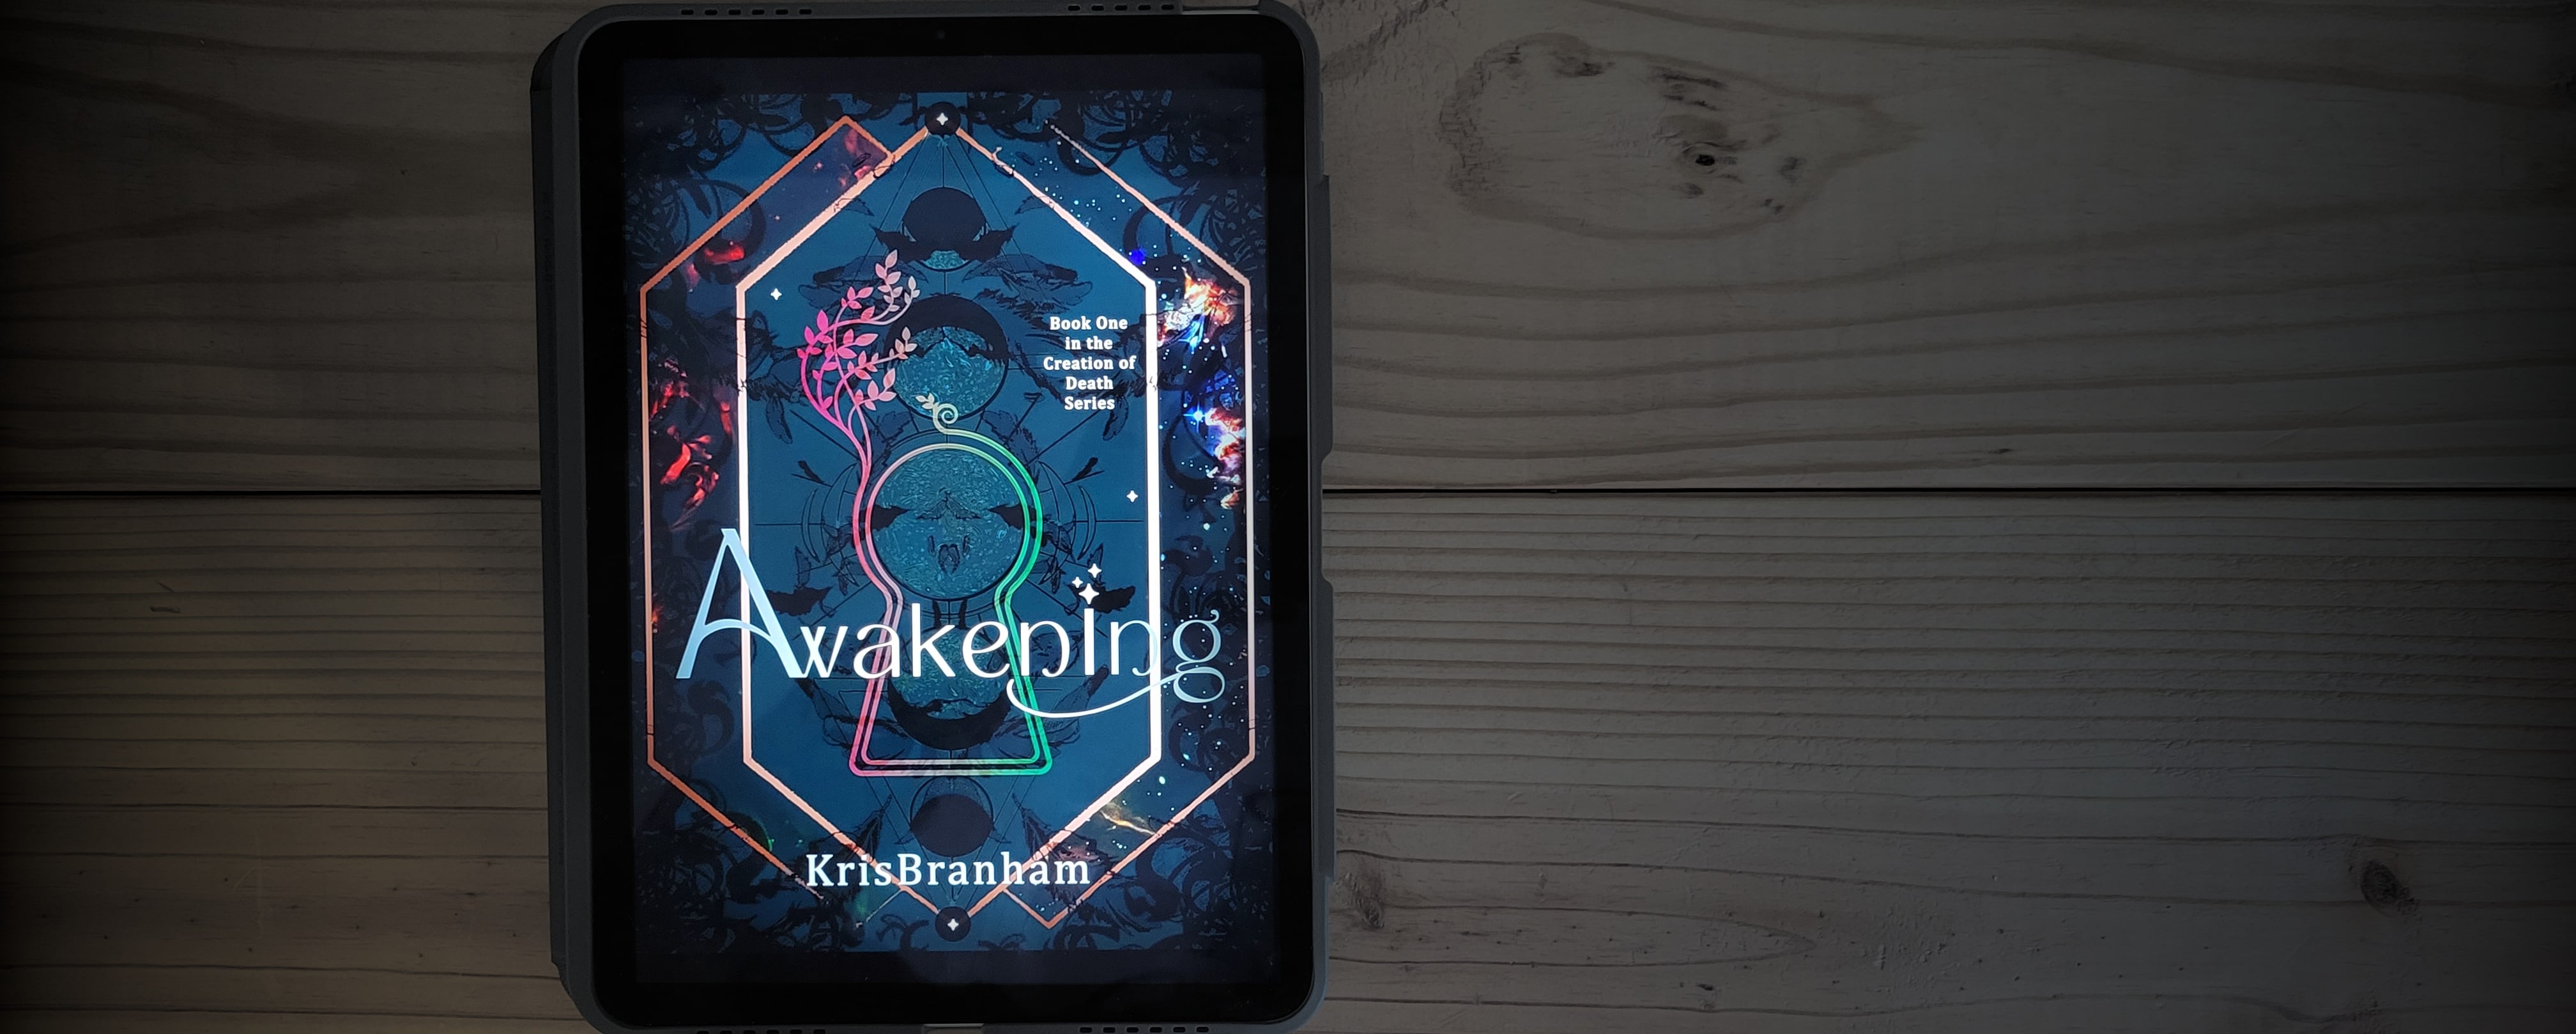 Book cover of Awakening by Kris Branham